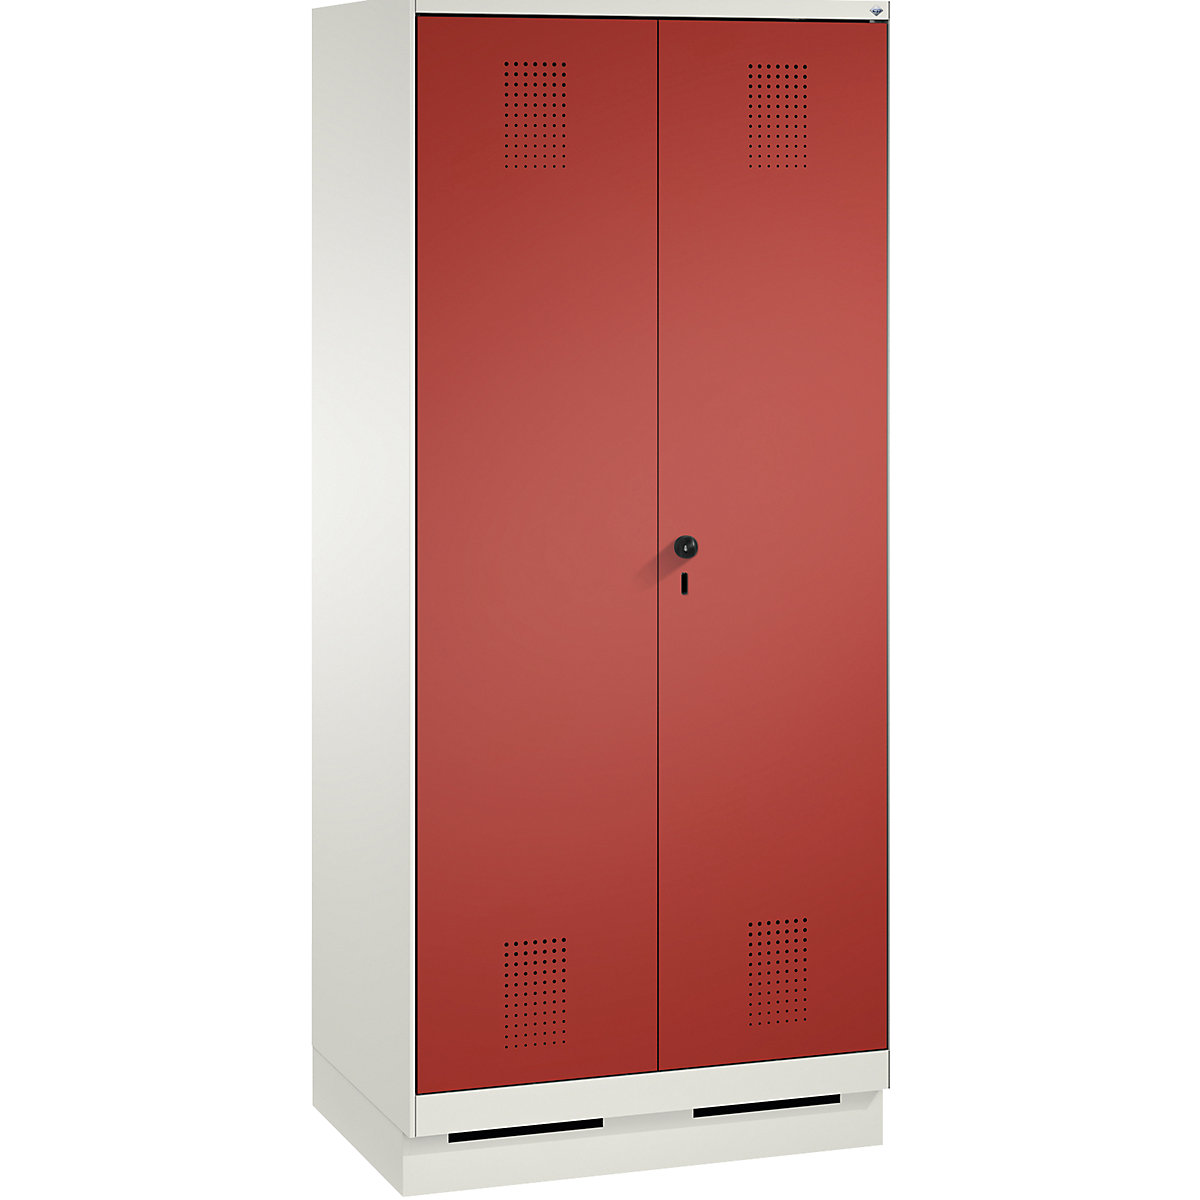 Garderobna omara EVOLO, dvokrilna vrata – C+P, 2 razdelka, širina razdelka 400 mm, s podnožjem, prometno bele / ognjeno rdeče barve-14